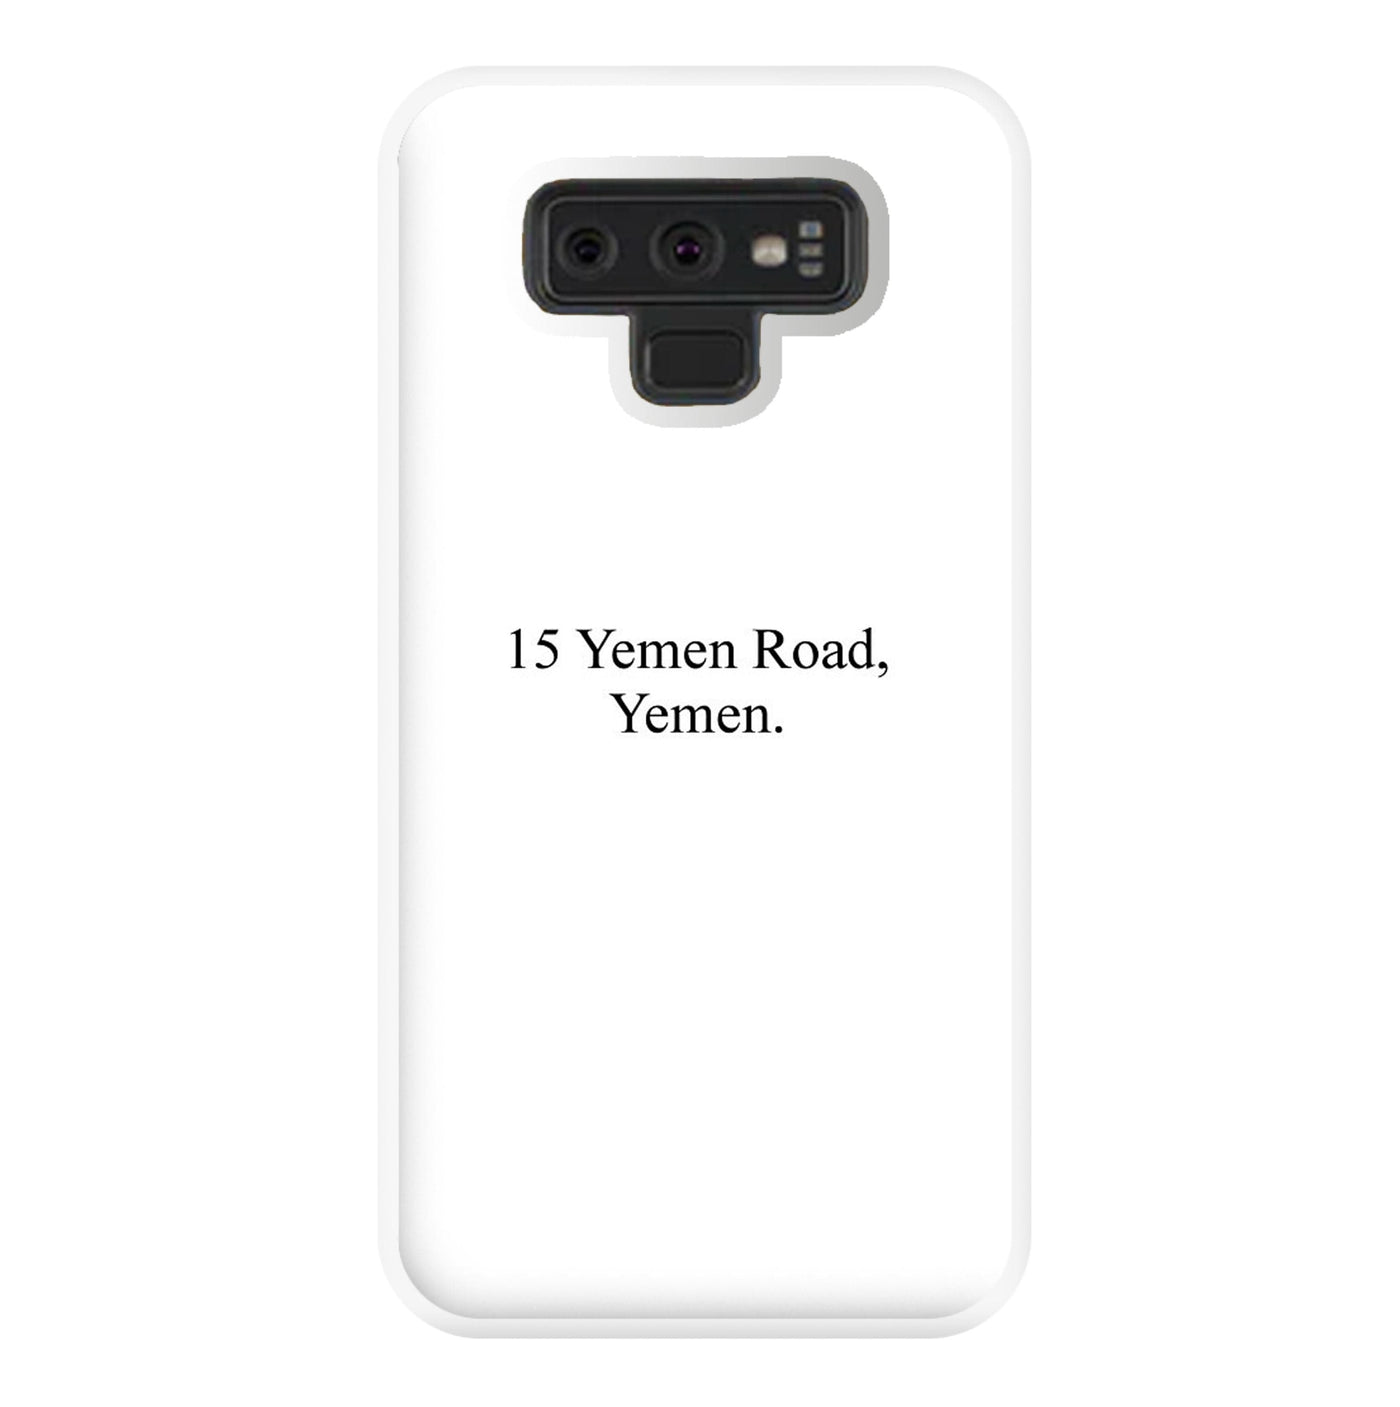 15 Yemen Road, Yemen - Friends Phone Case